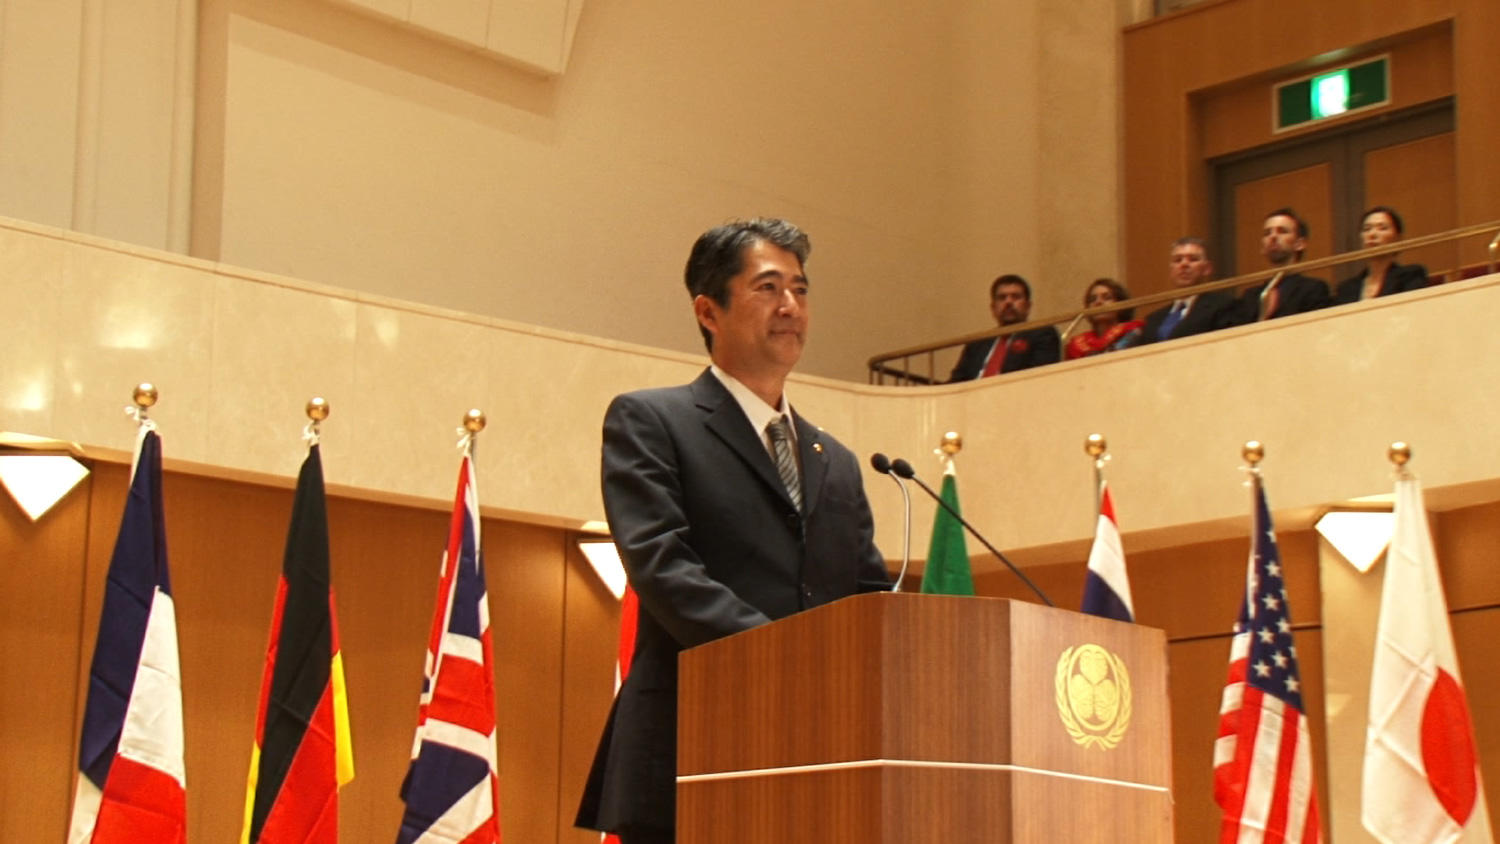 会田 誠《The video of a man calling himself Japan’s Prime Minister making a speech at an international assembly》